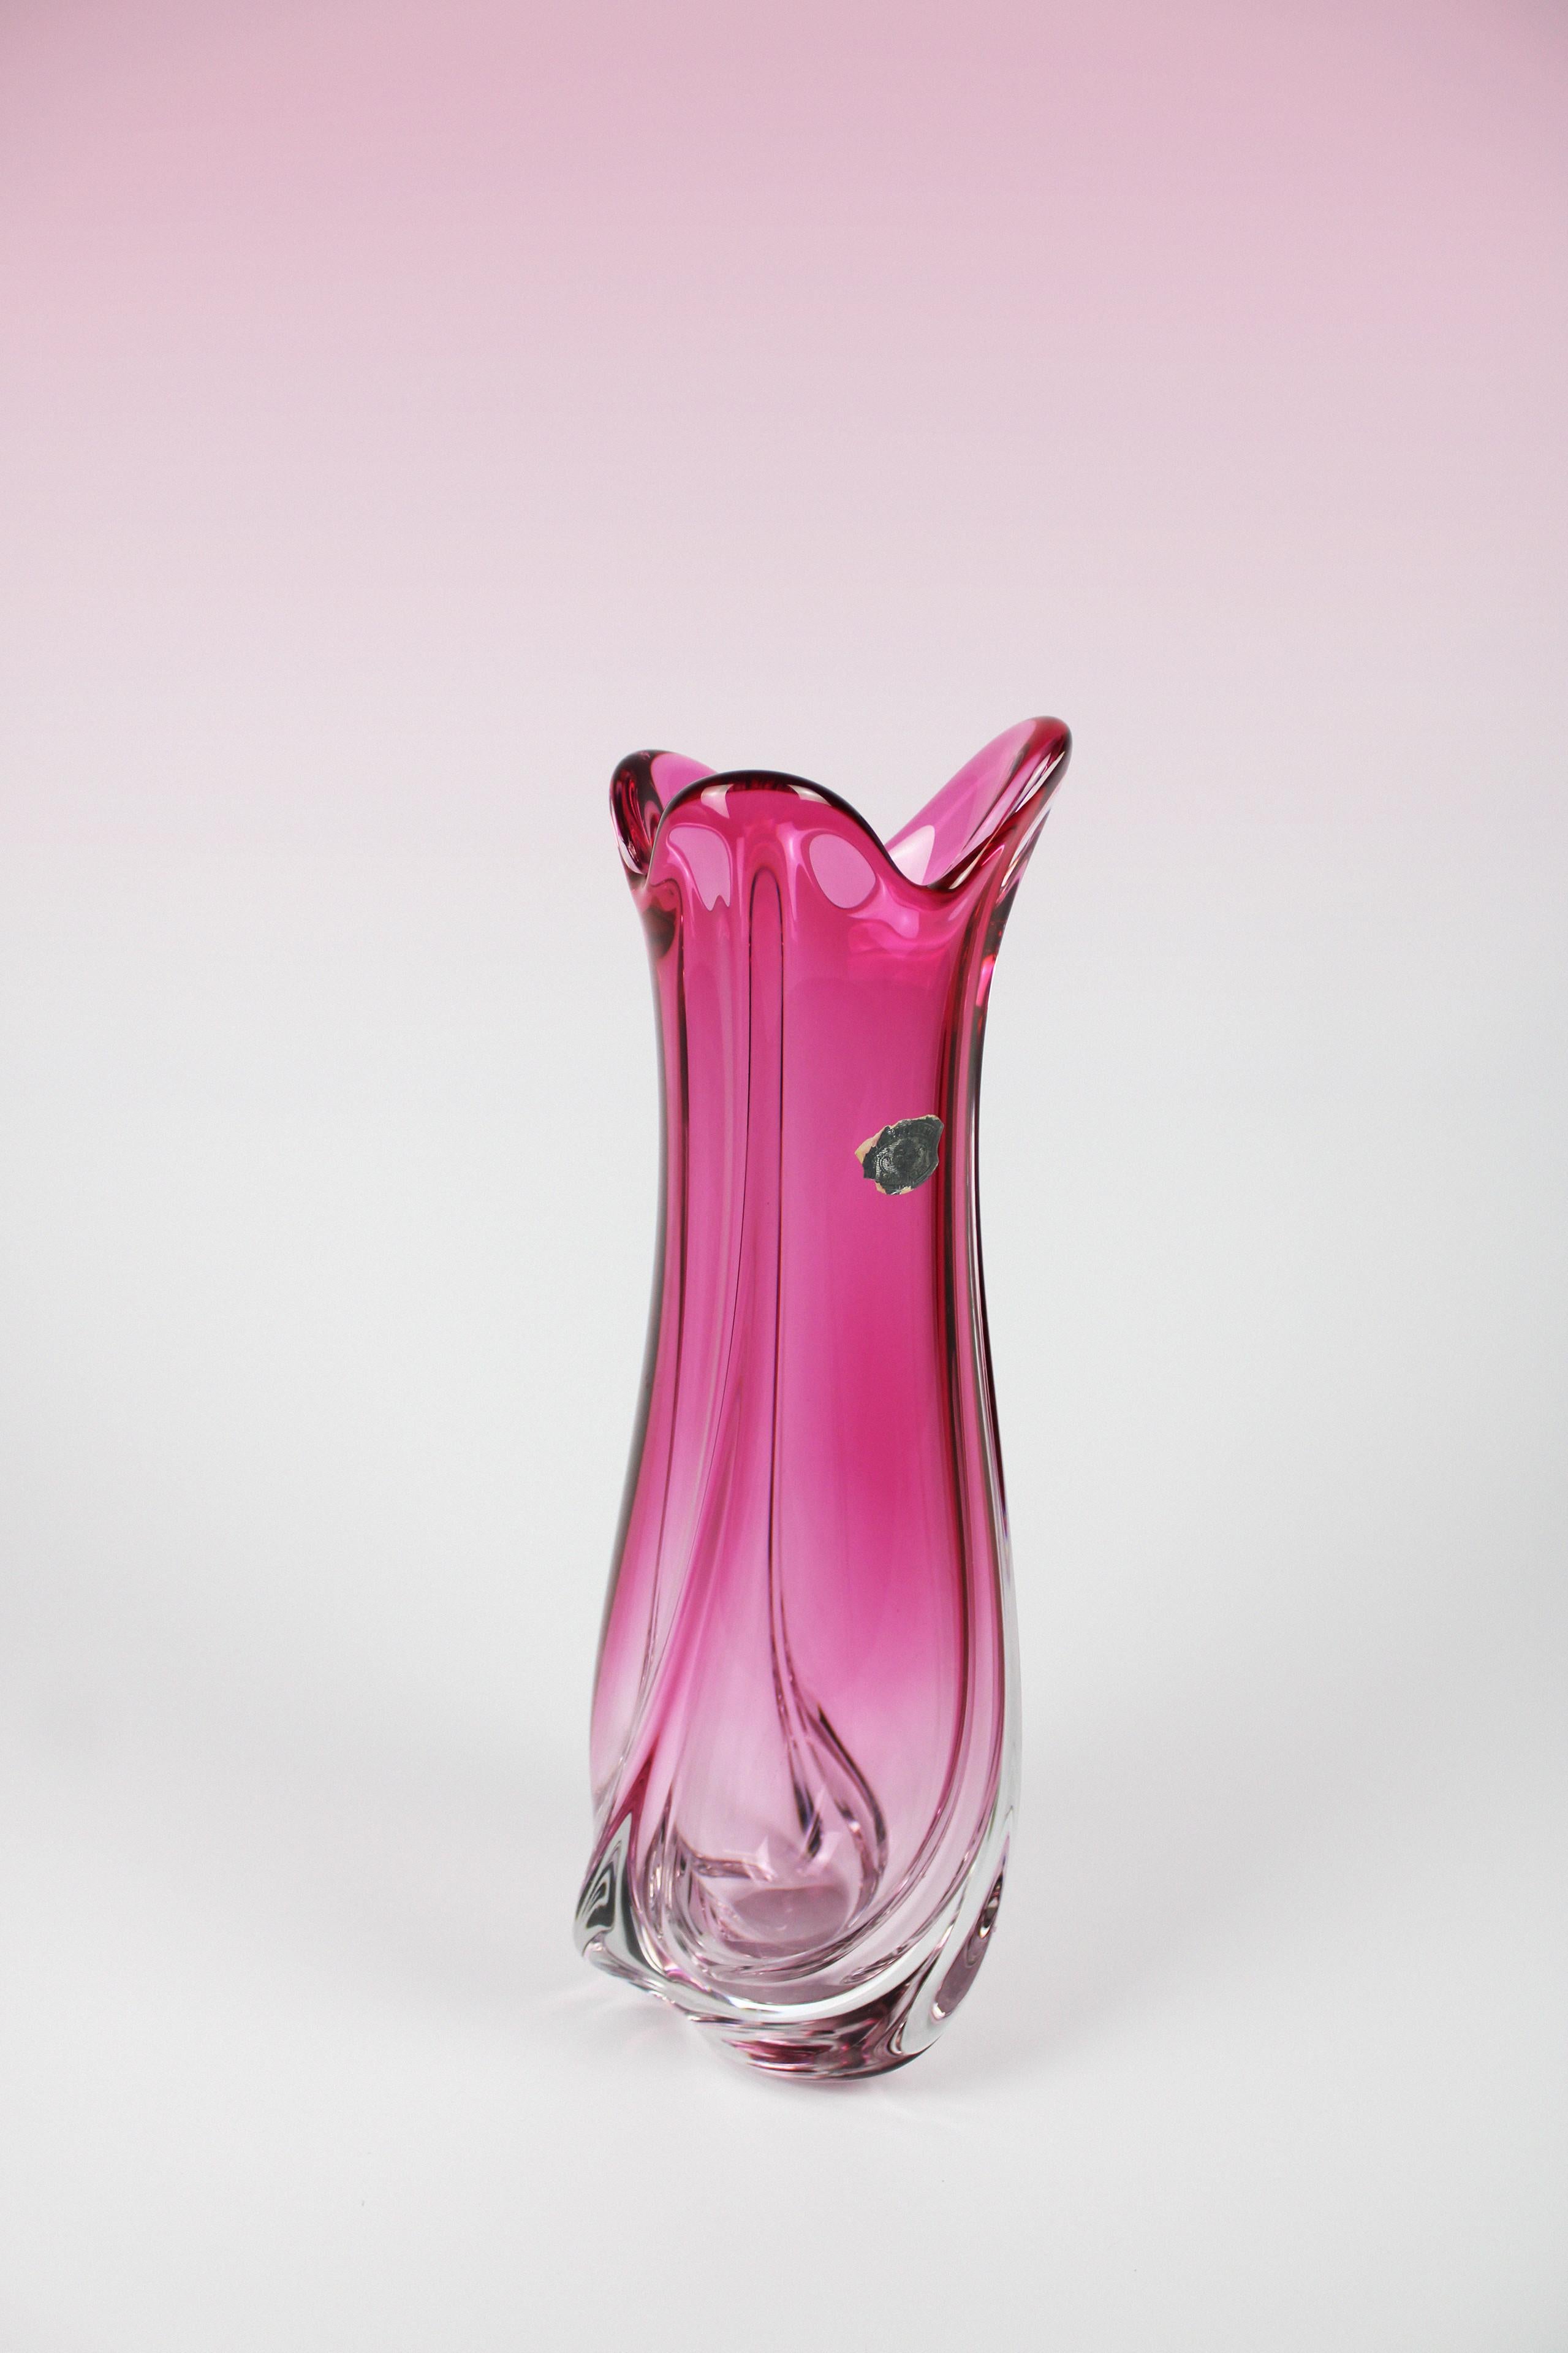 Ce vase en cristal de Val St. Lambert, une manufacture belge connue pour sa verrerie, est une pièce spéciale à avoir chez soi. Il s'agit d'un grand vase de forme organique qui se distingue immédiatement par sa couleur rose. Il s'agit d'une pièce